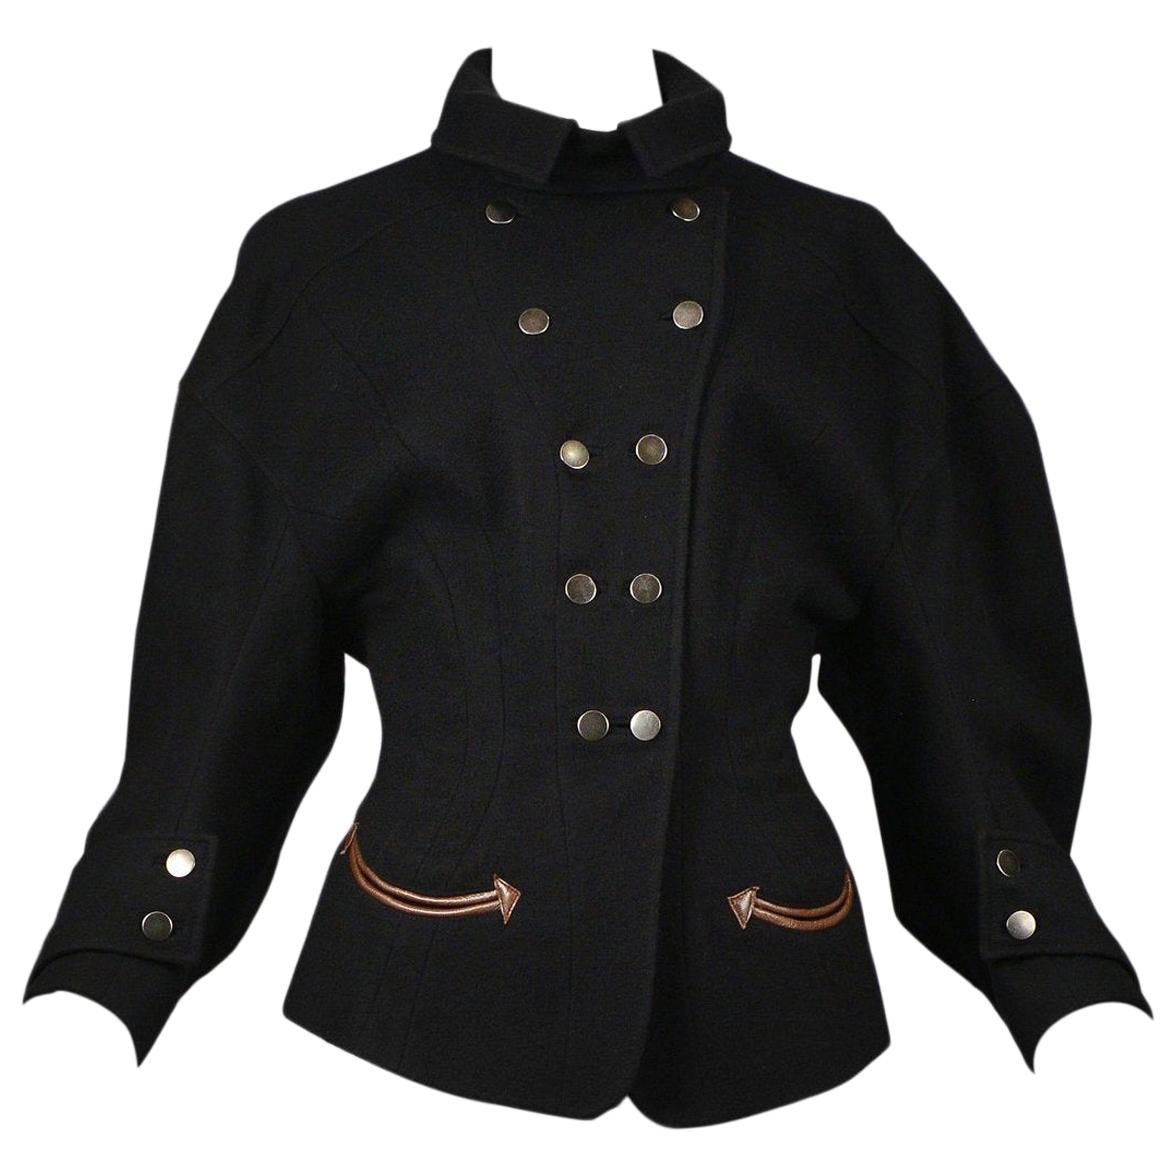 Balenciaga by Nicolas Ghesquiere Black Western Inspired Jacket 2003